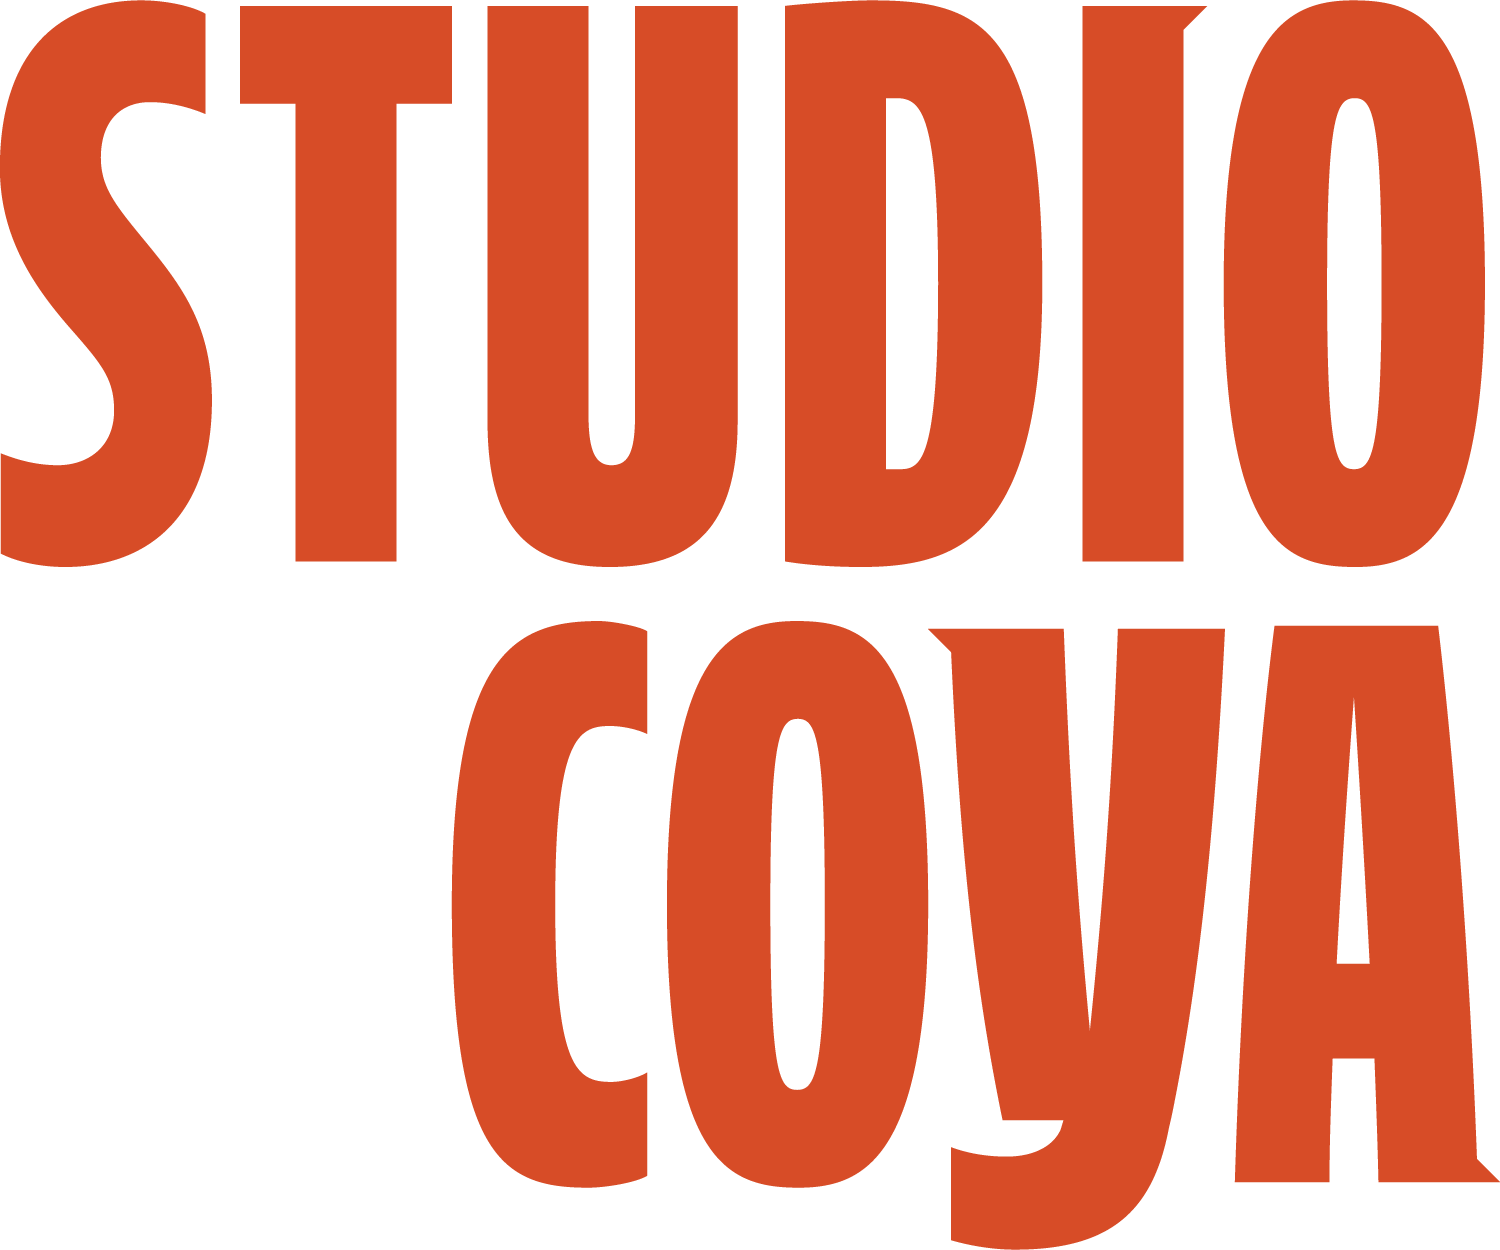 Studio Coya